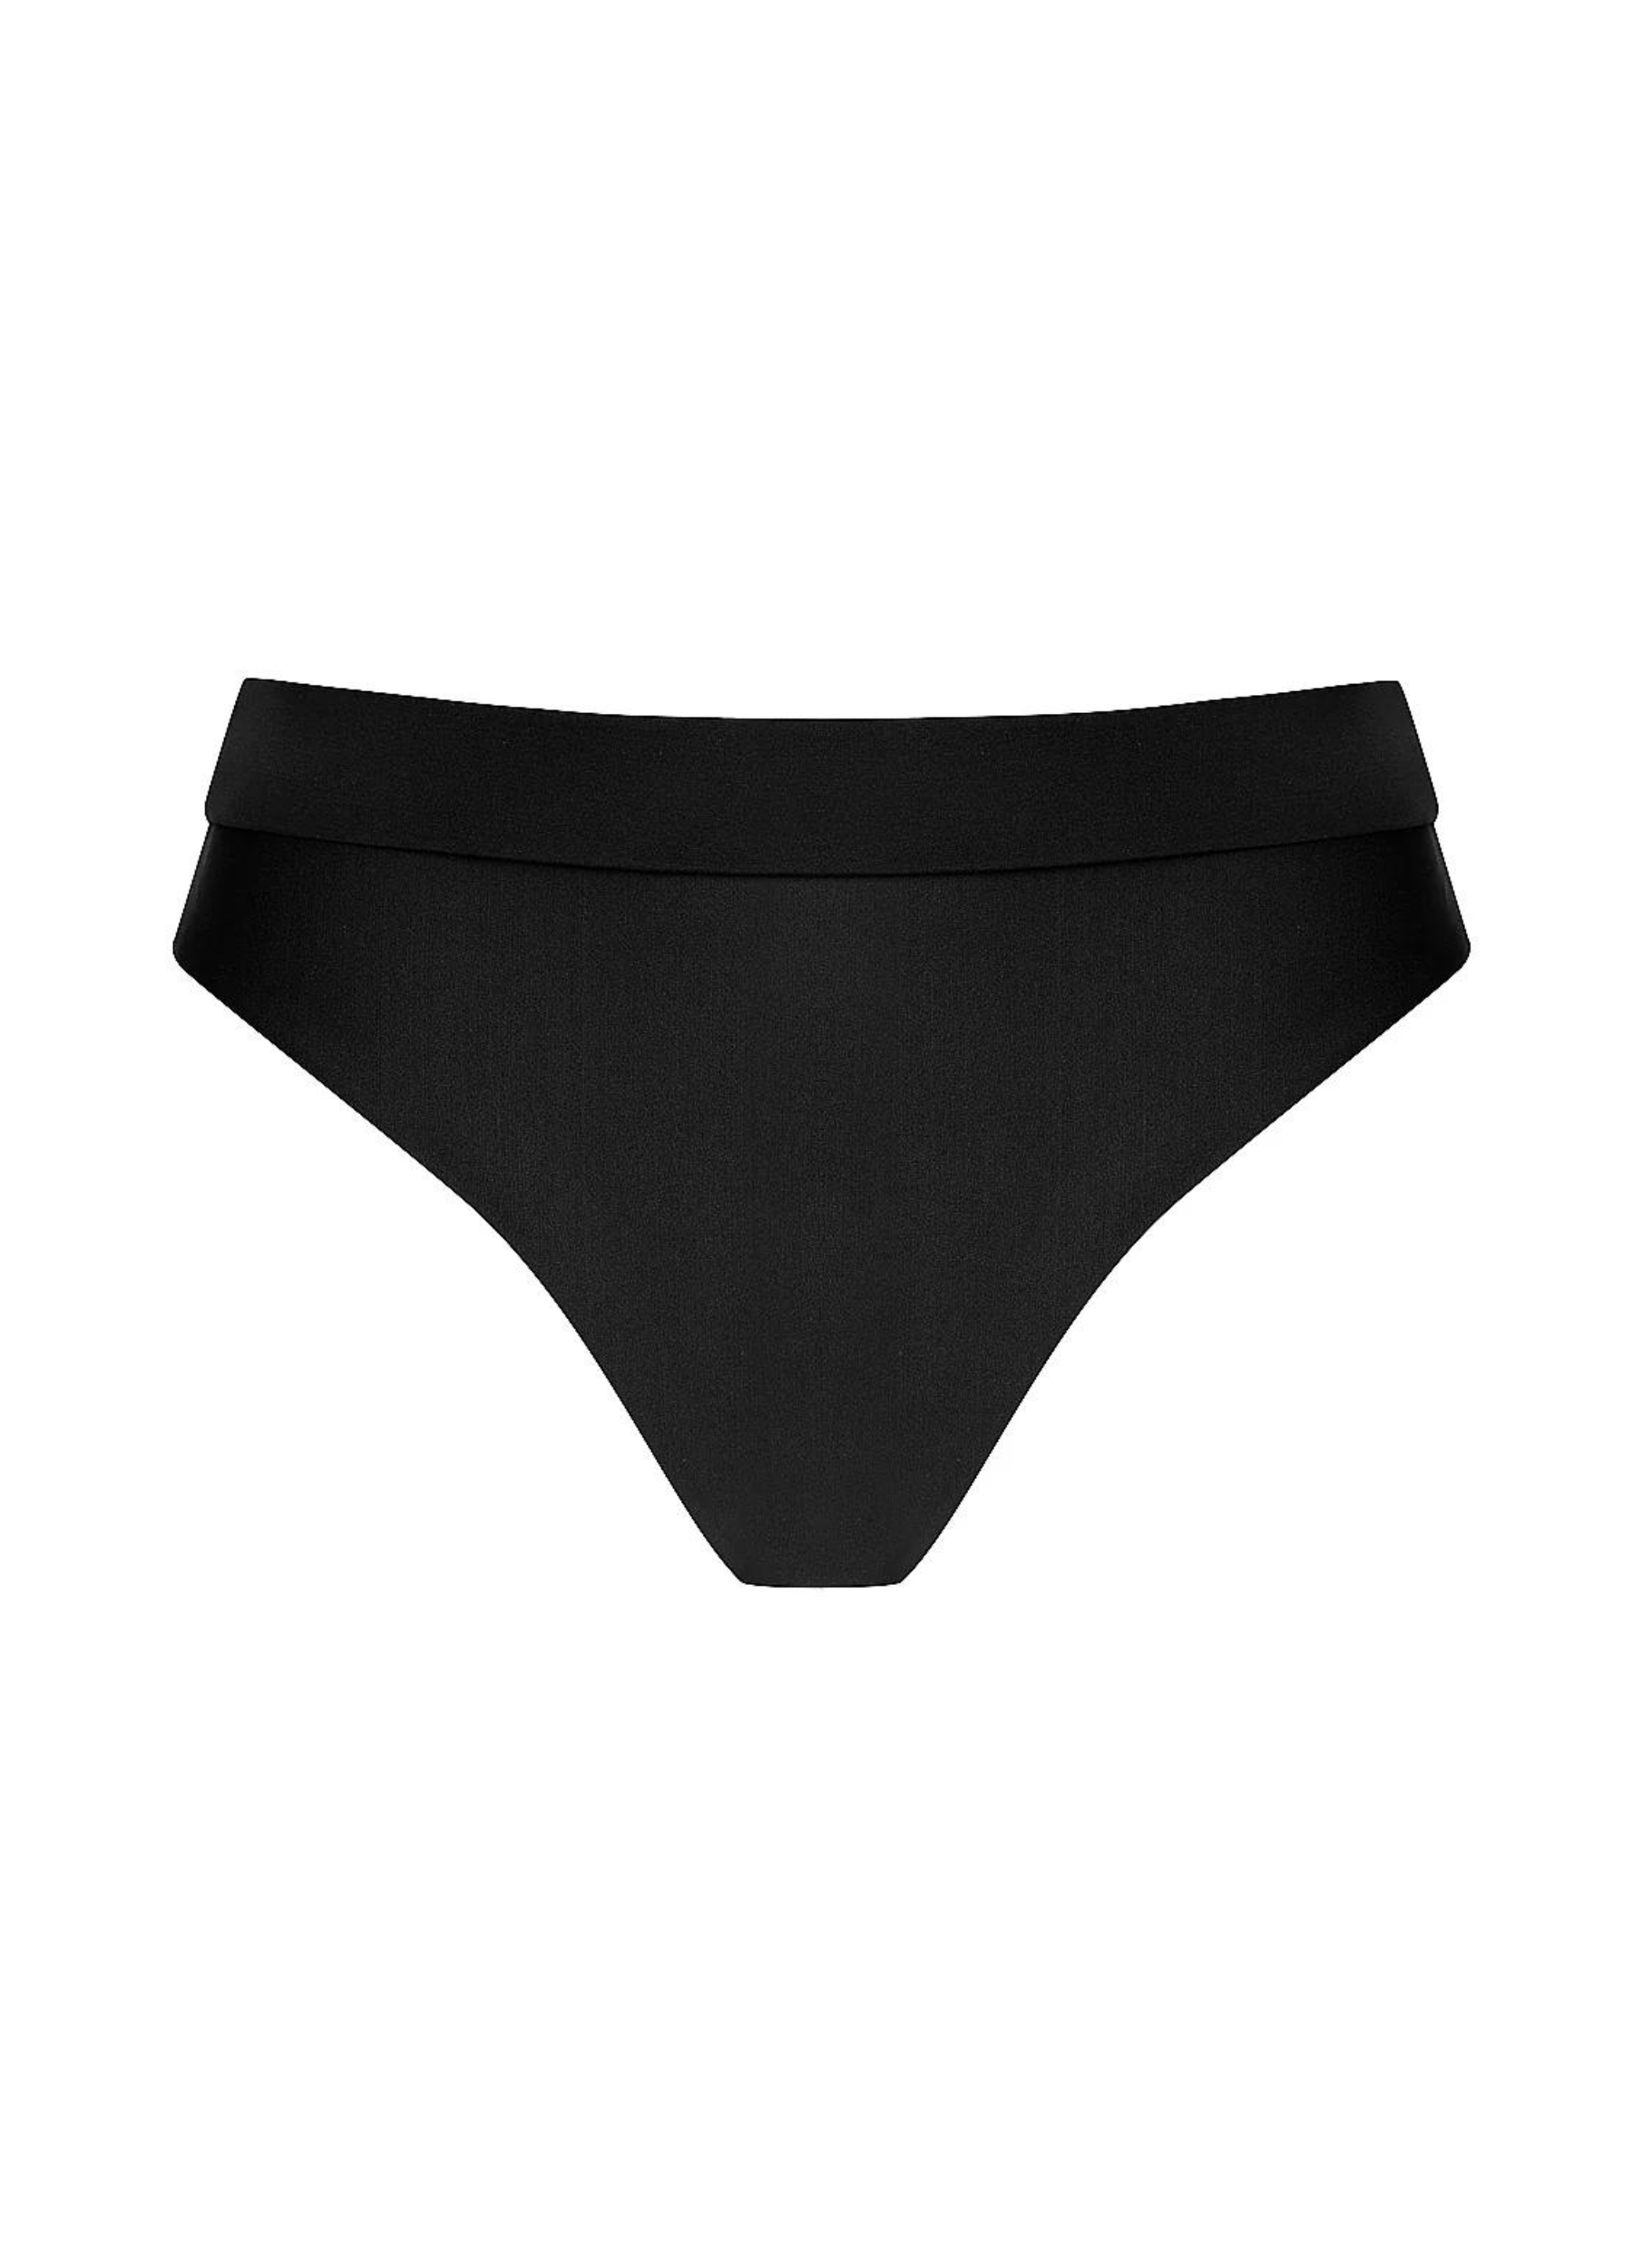 Infamous Swim Ginger Bikini Bottoms in Black